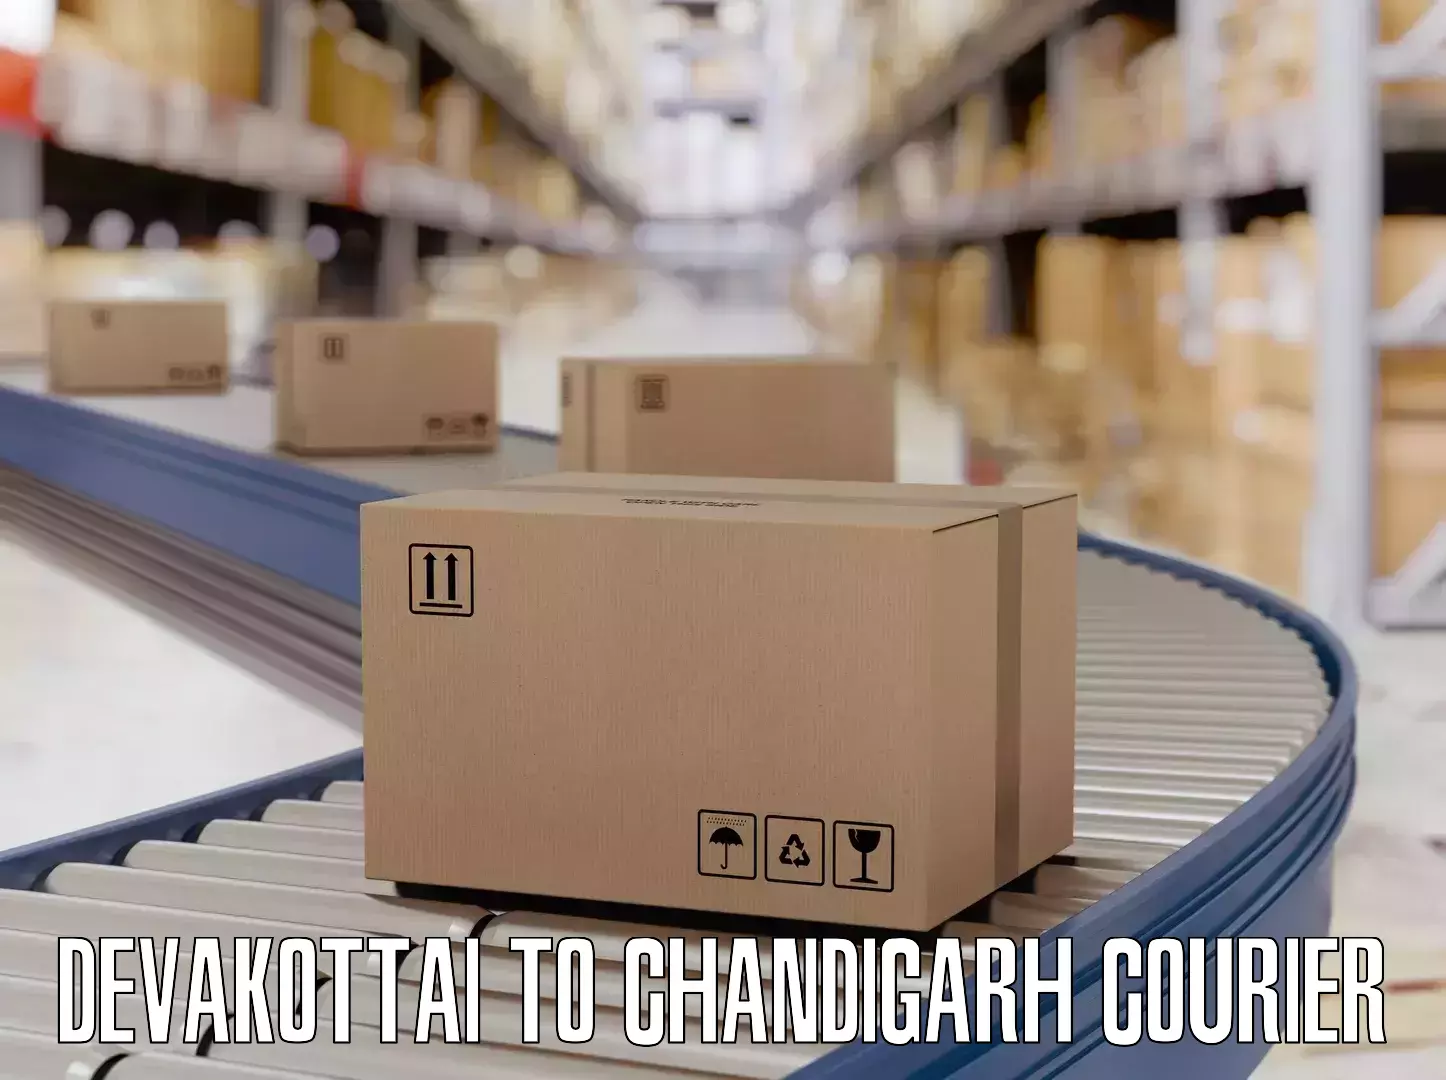 Luggage courier logistics Devakottai to Chandigarh